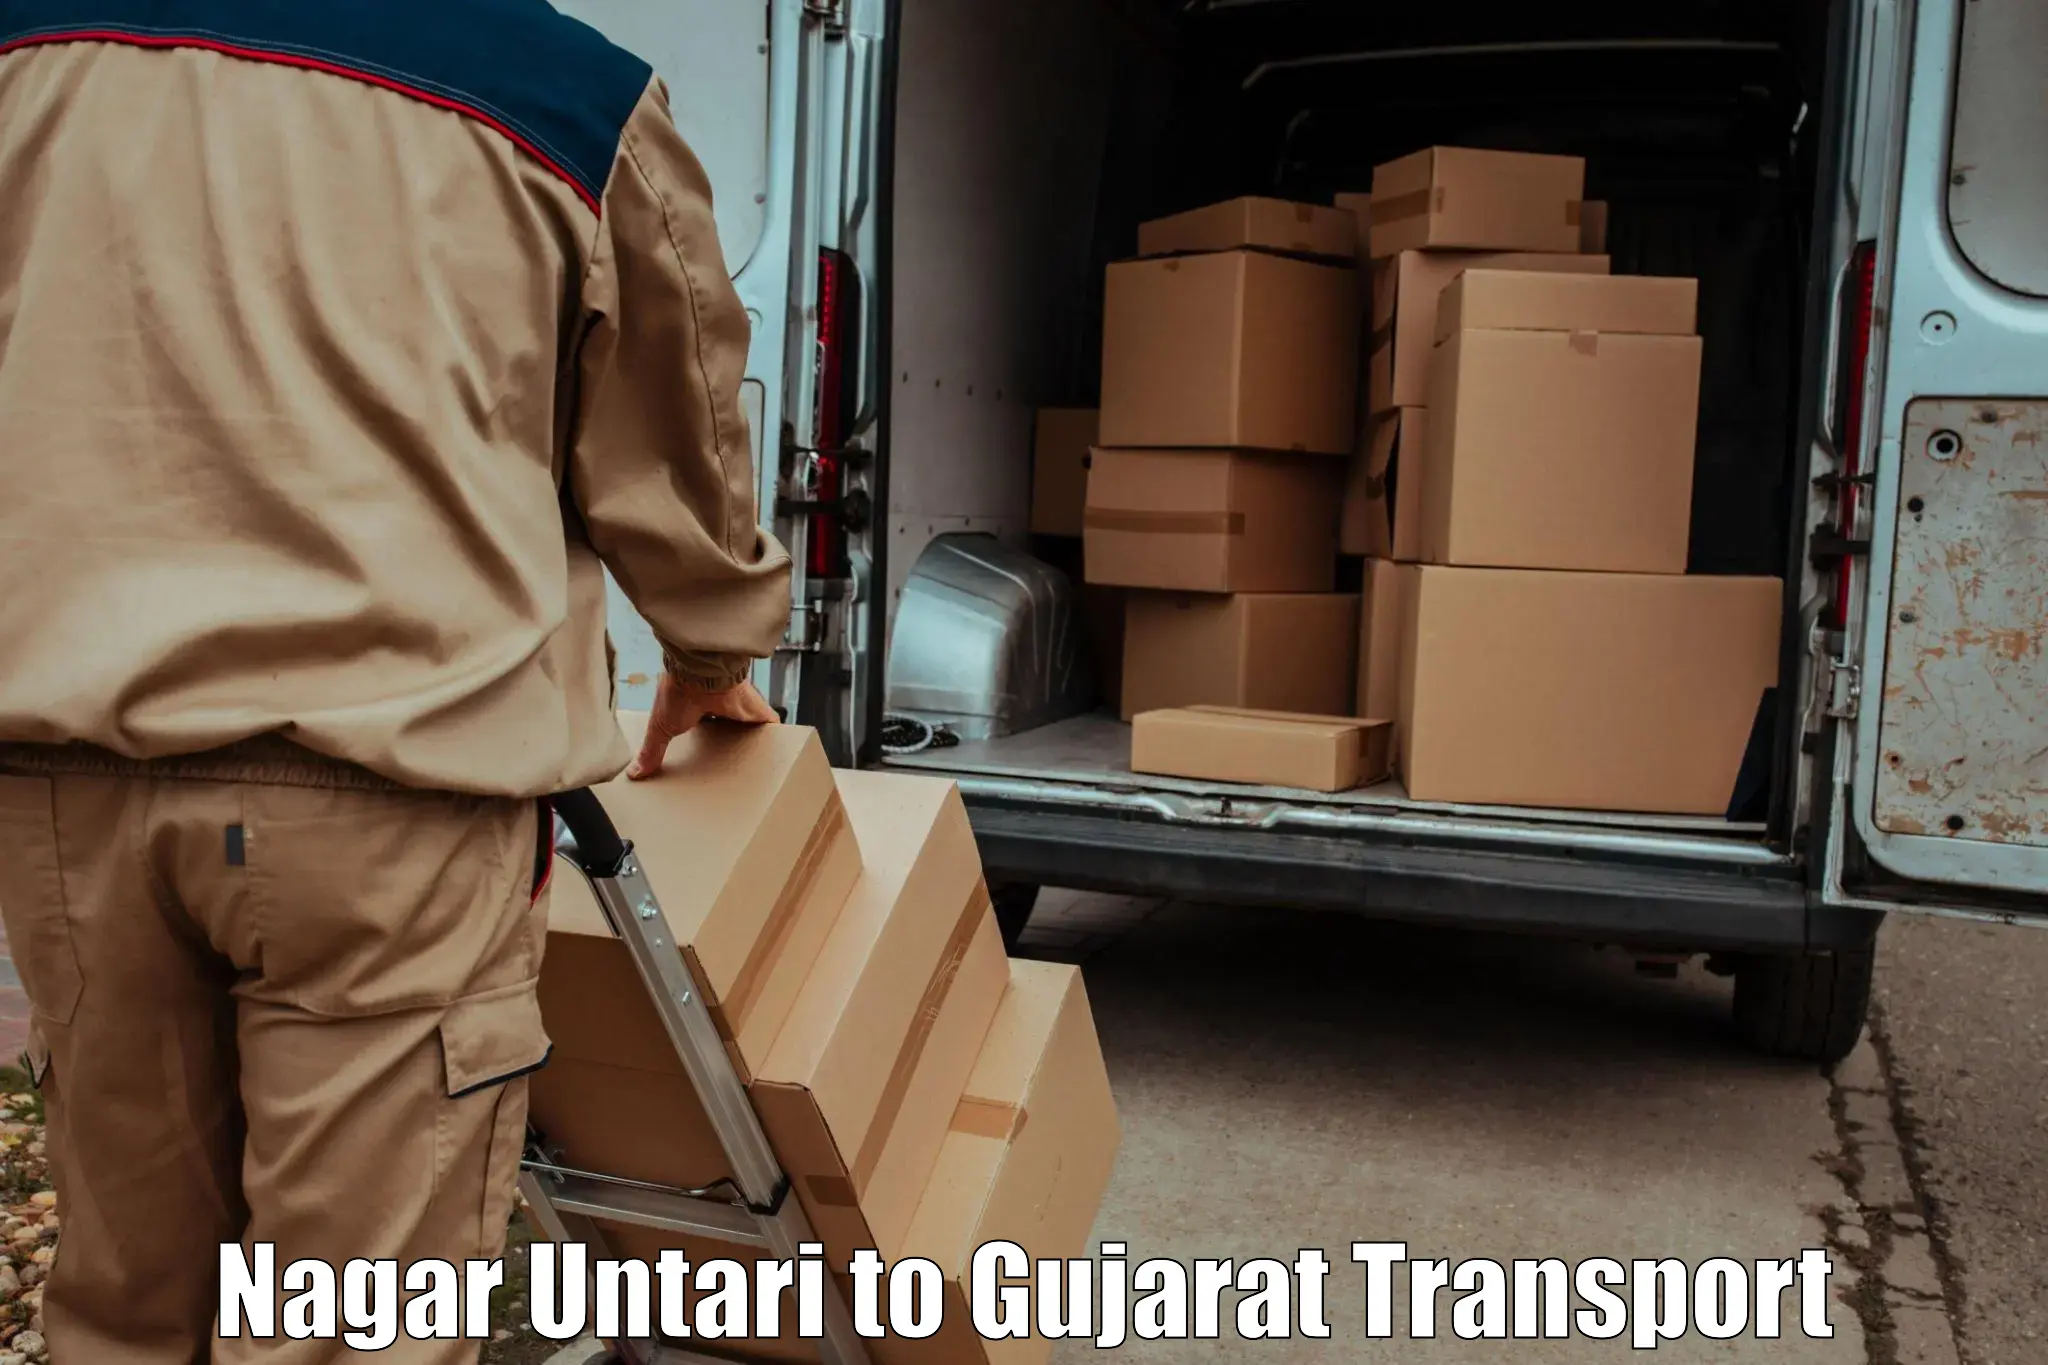 International cargo transportation services Nagar Untari to Gandhinagar